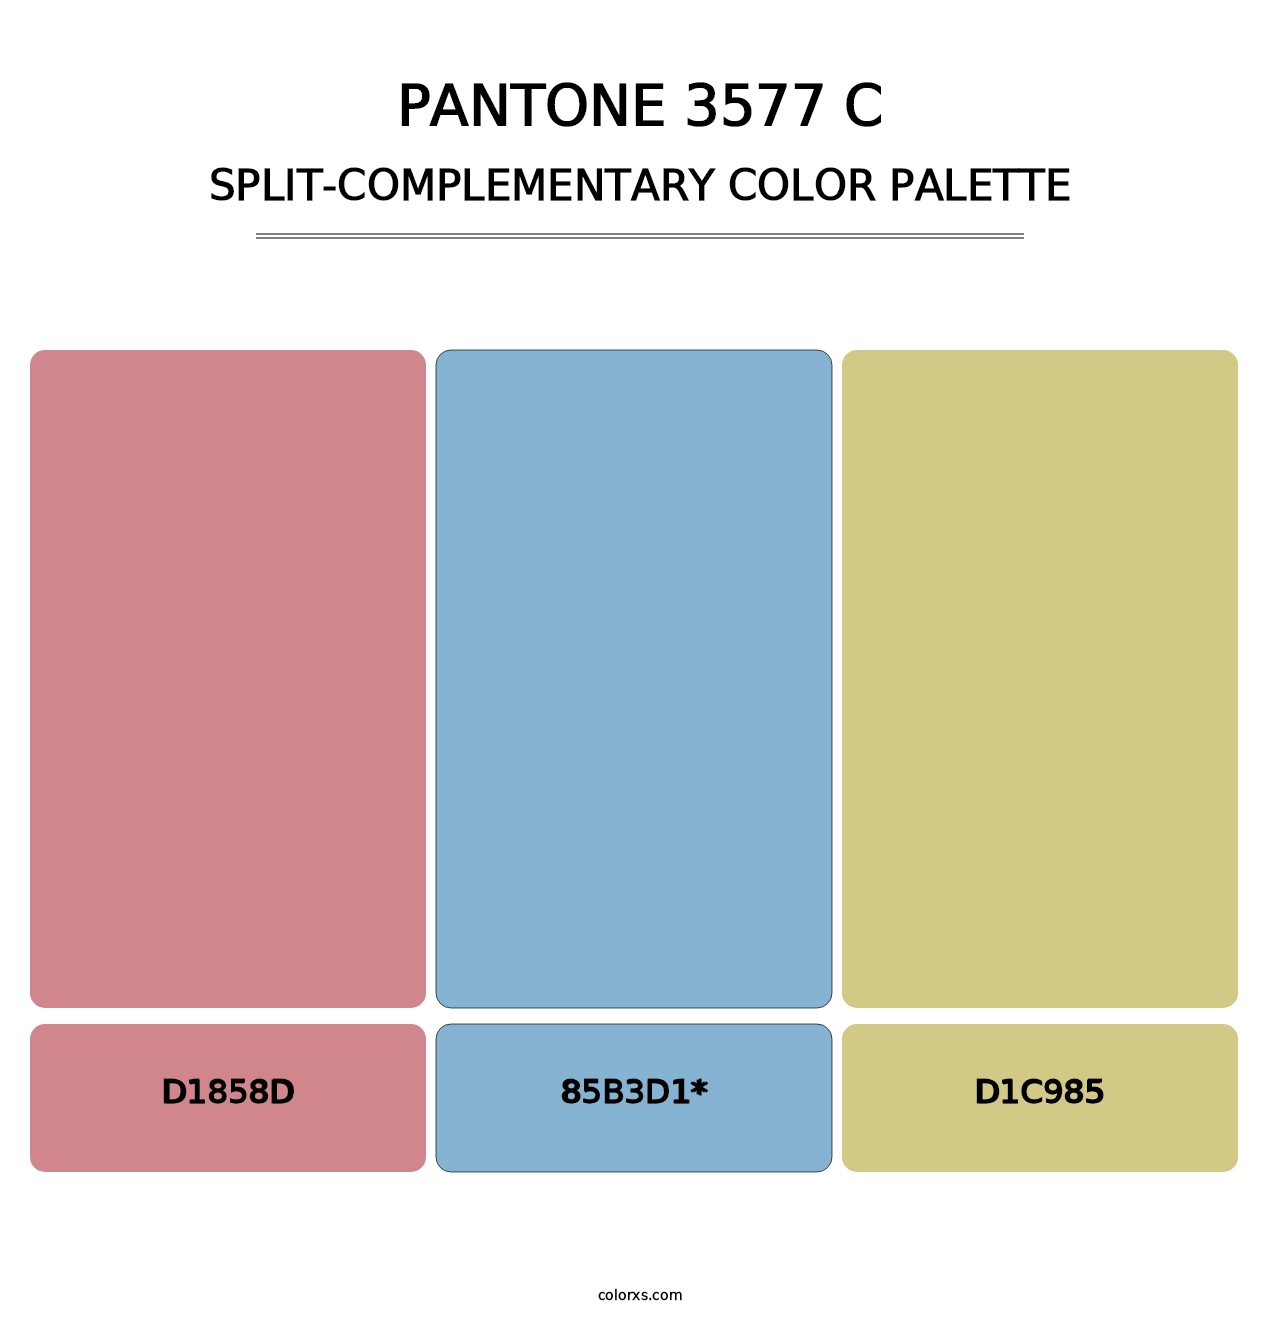 PANTONE 3577 C - Split-Complementary Color Palette